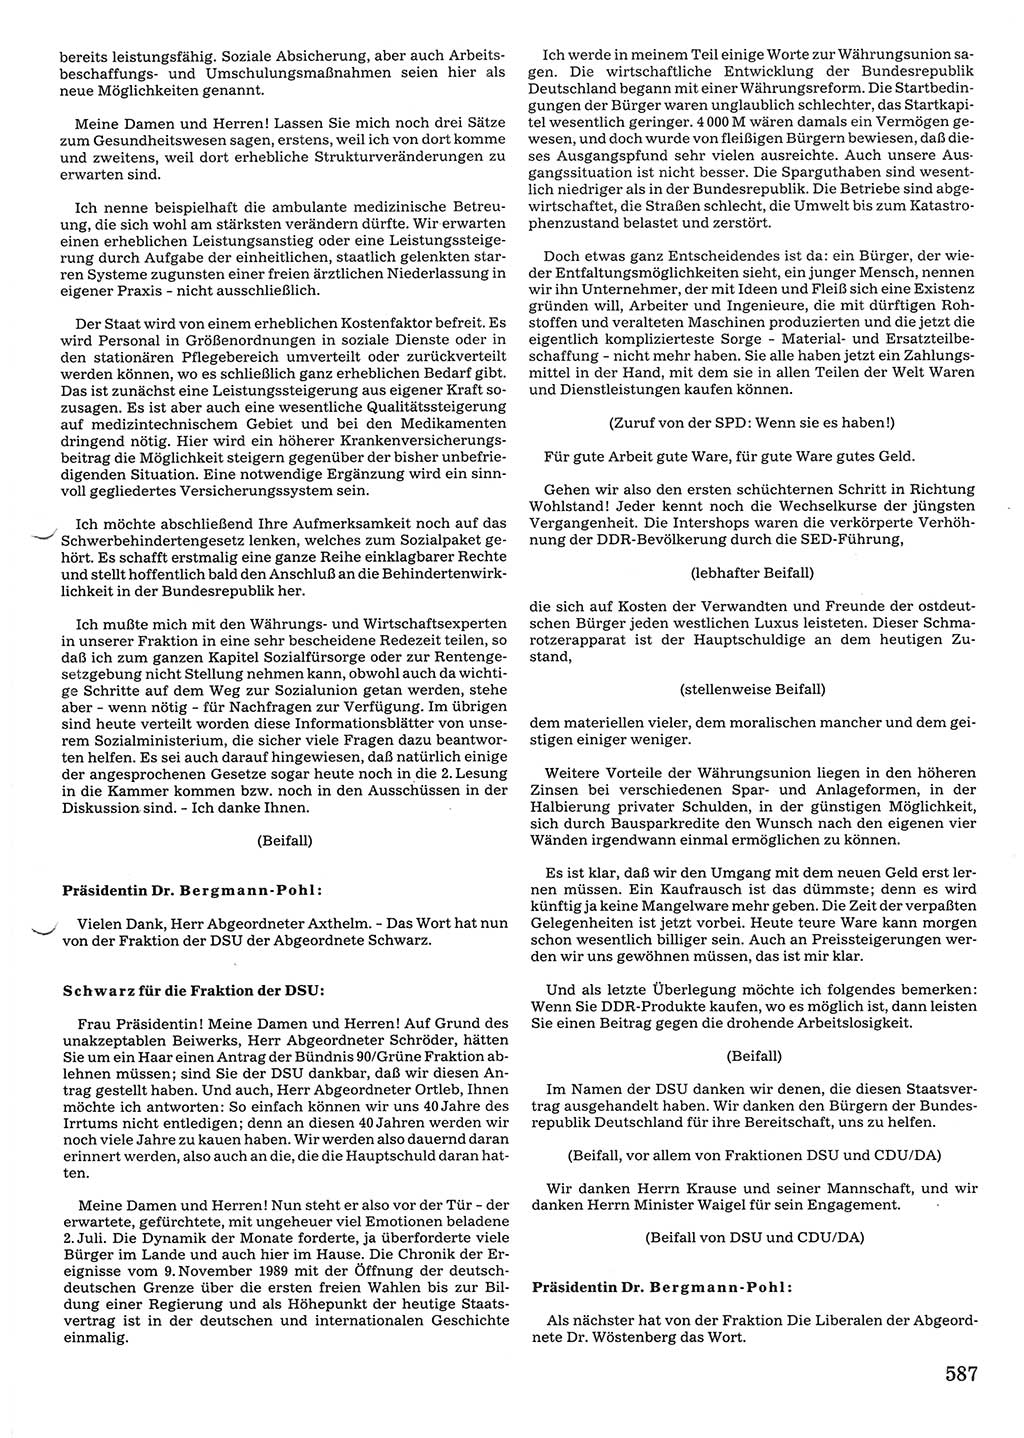 Tagungen der Volkskammer (VK) der Deutschen Demokratischen Republik (DDR), 10. Wahlperiode 1990, Seite 587 (VK. DDR 10. WP. 1990, Prot. Tg. 1-38, 5.4.-2.10.1990, S. 587)